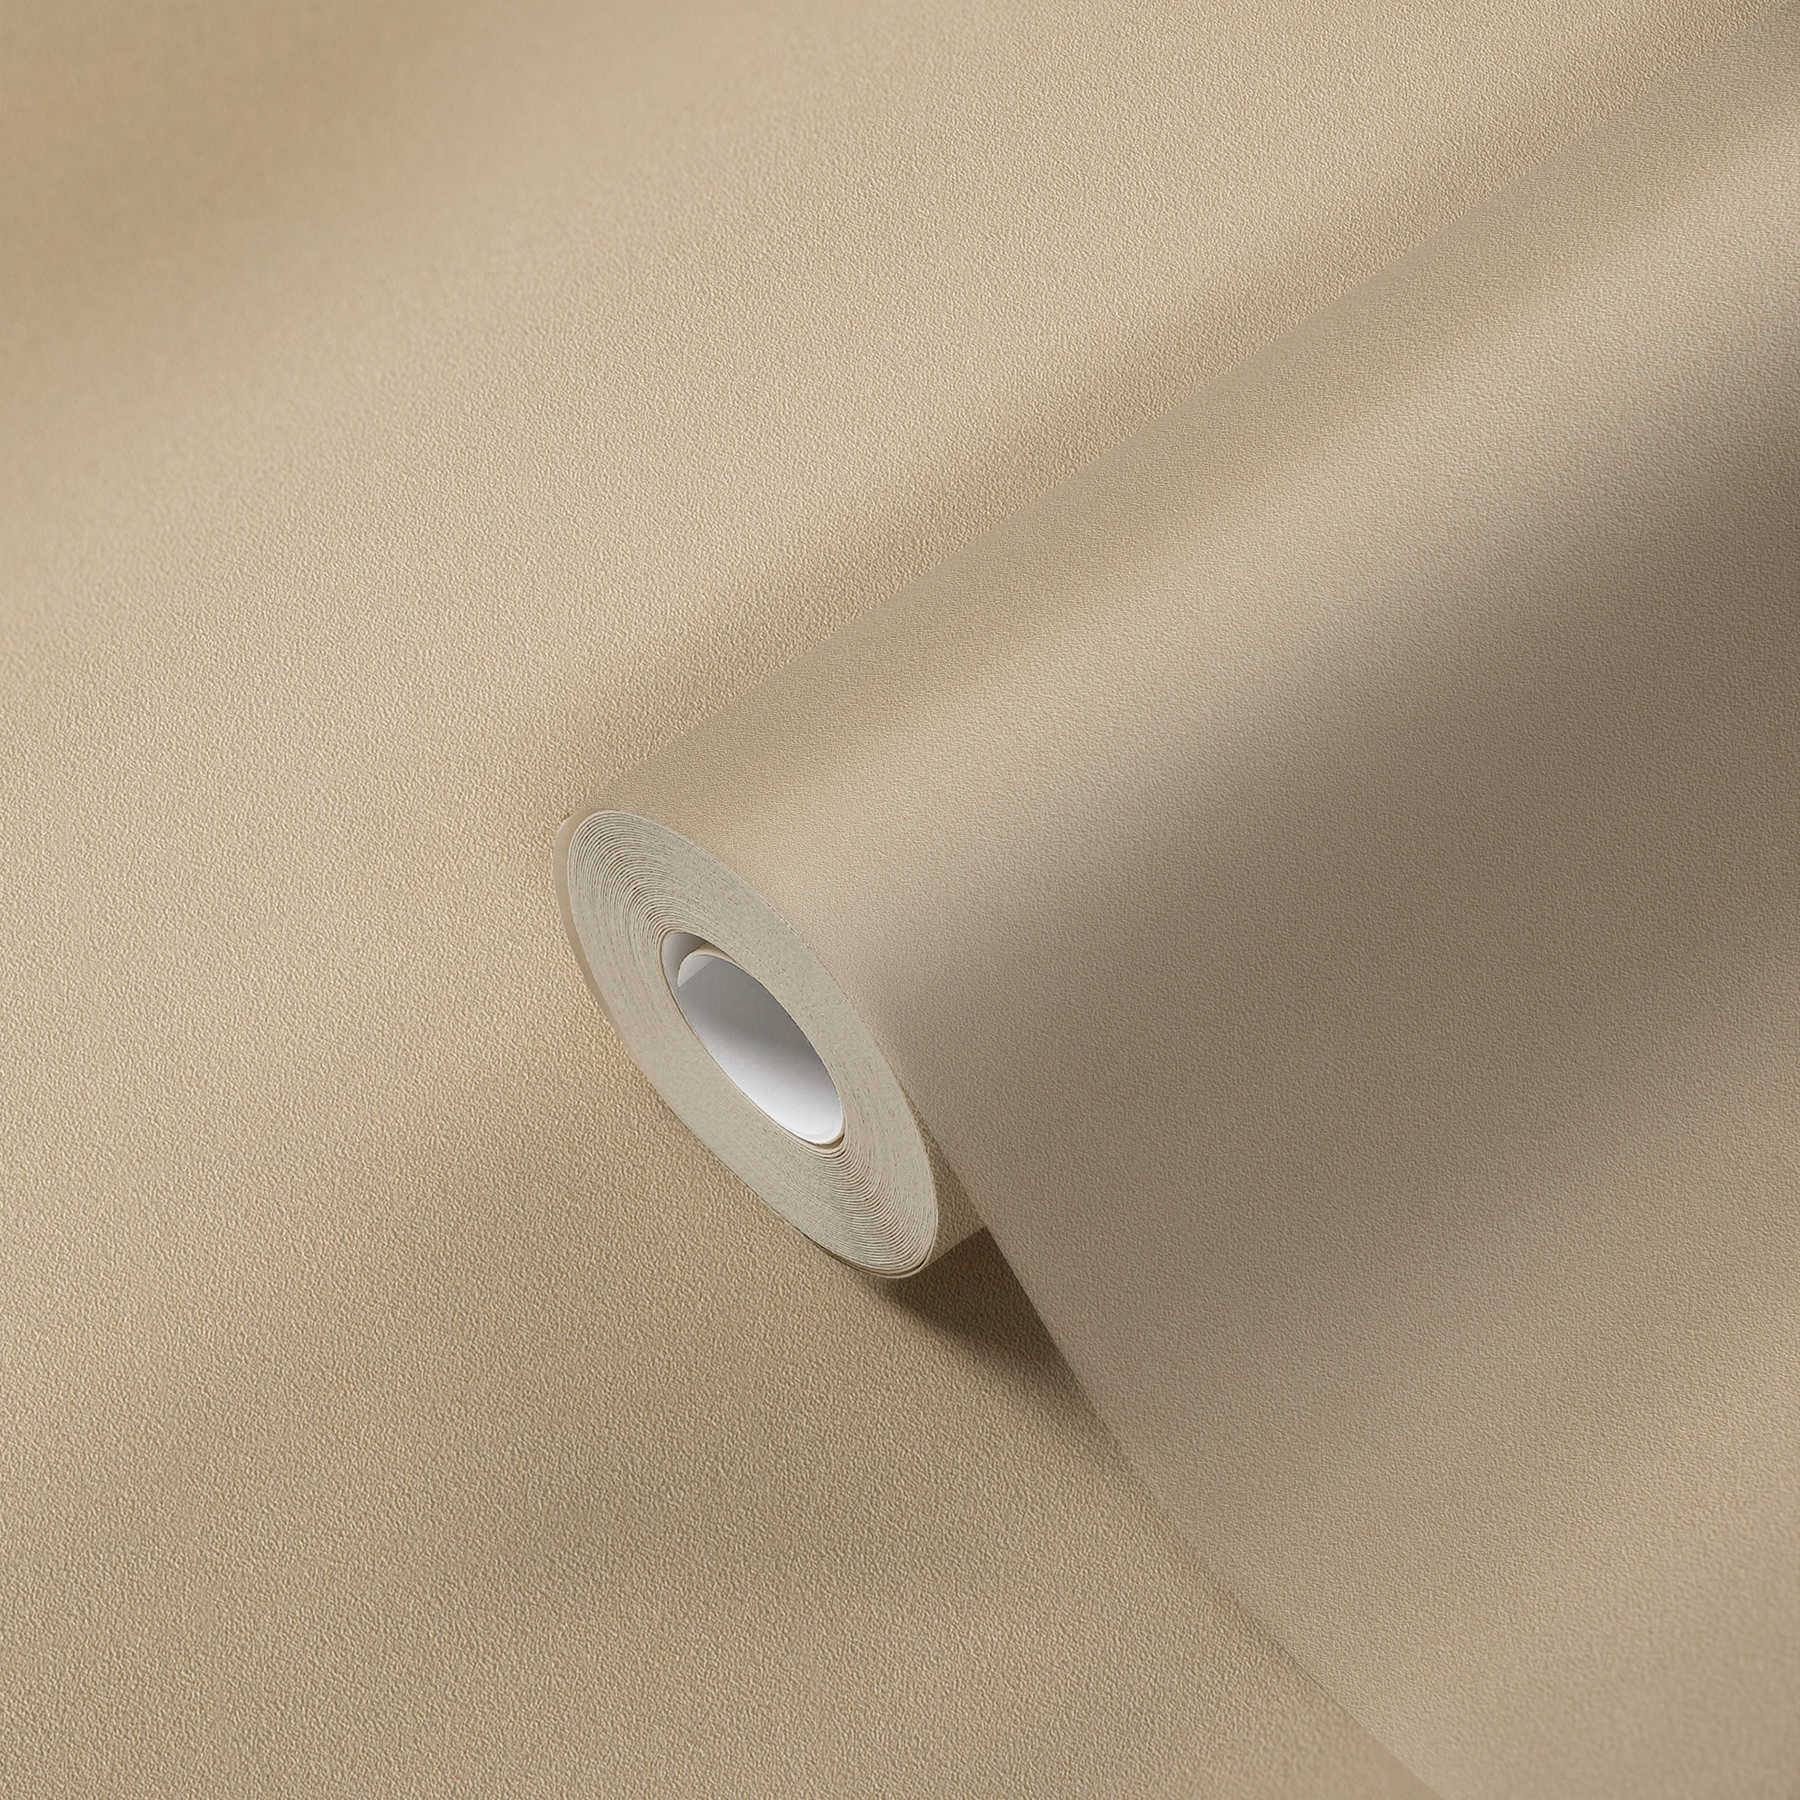             Papier peint uni beige avec motif structuré en aplat
        